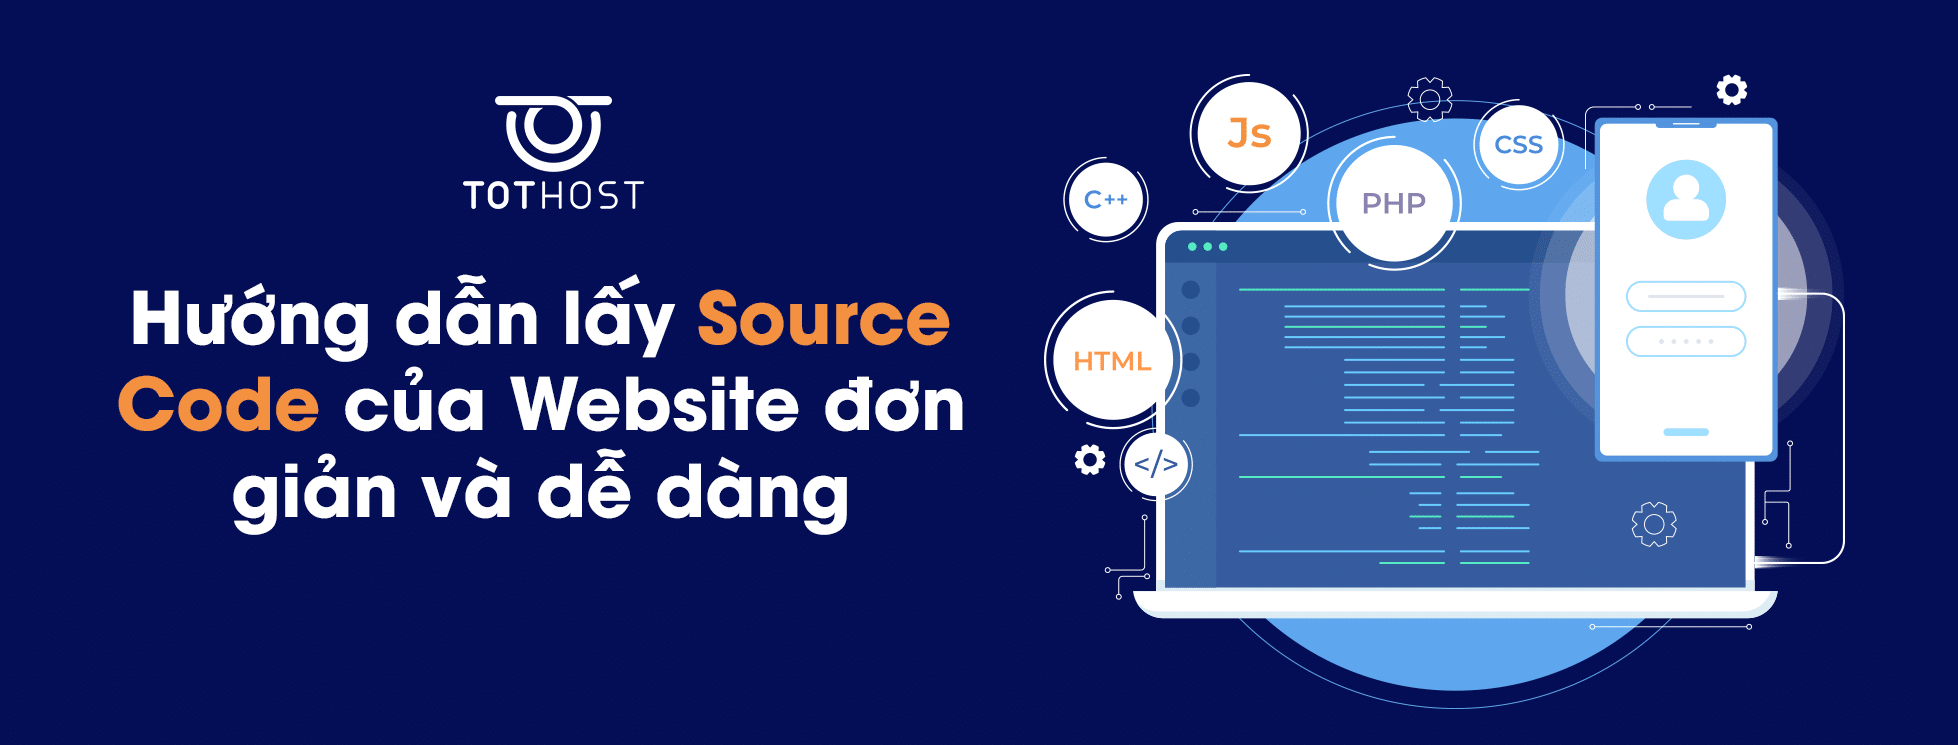 Hướng dẫn lấy Source Code HTML